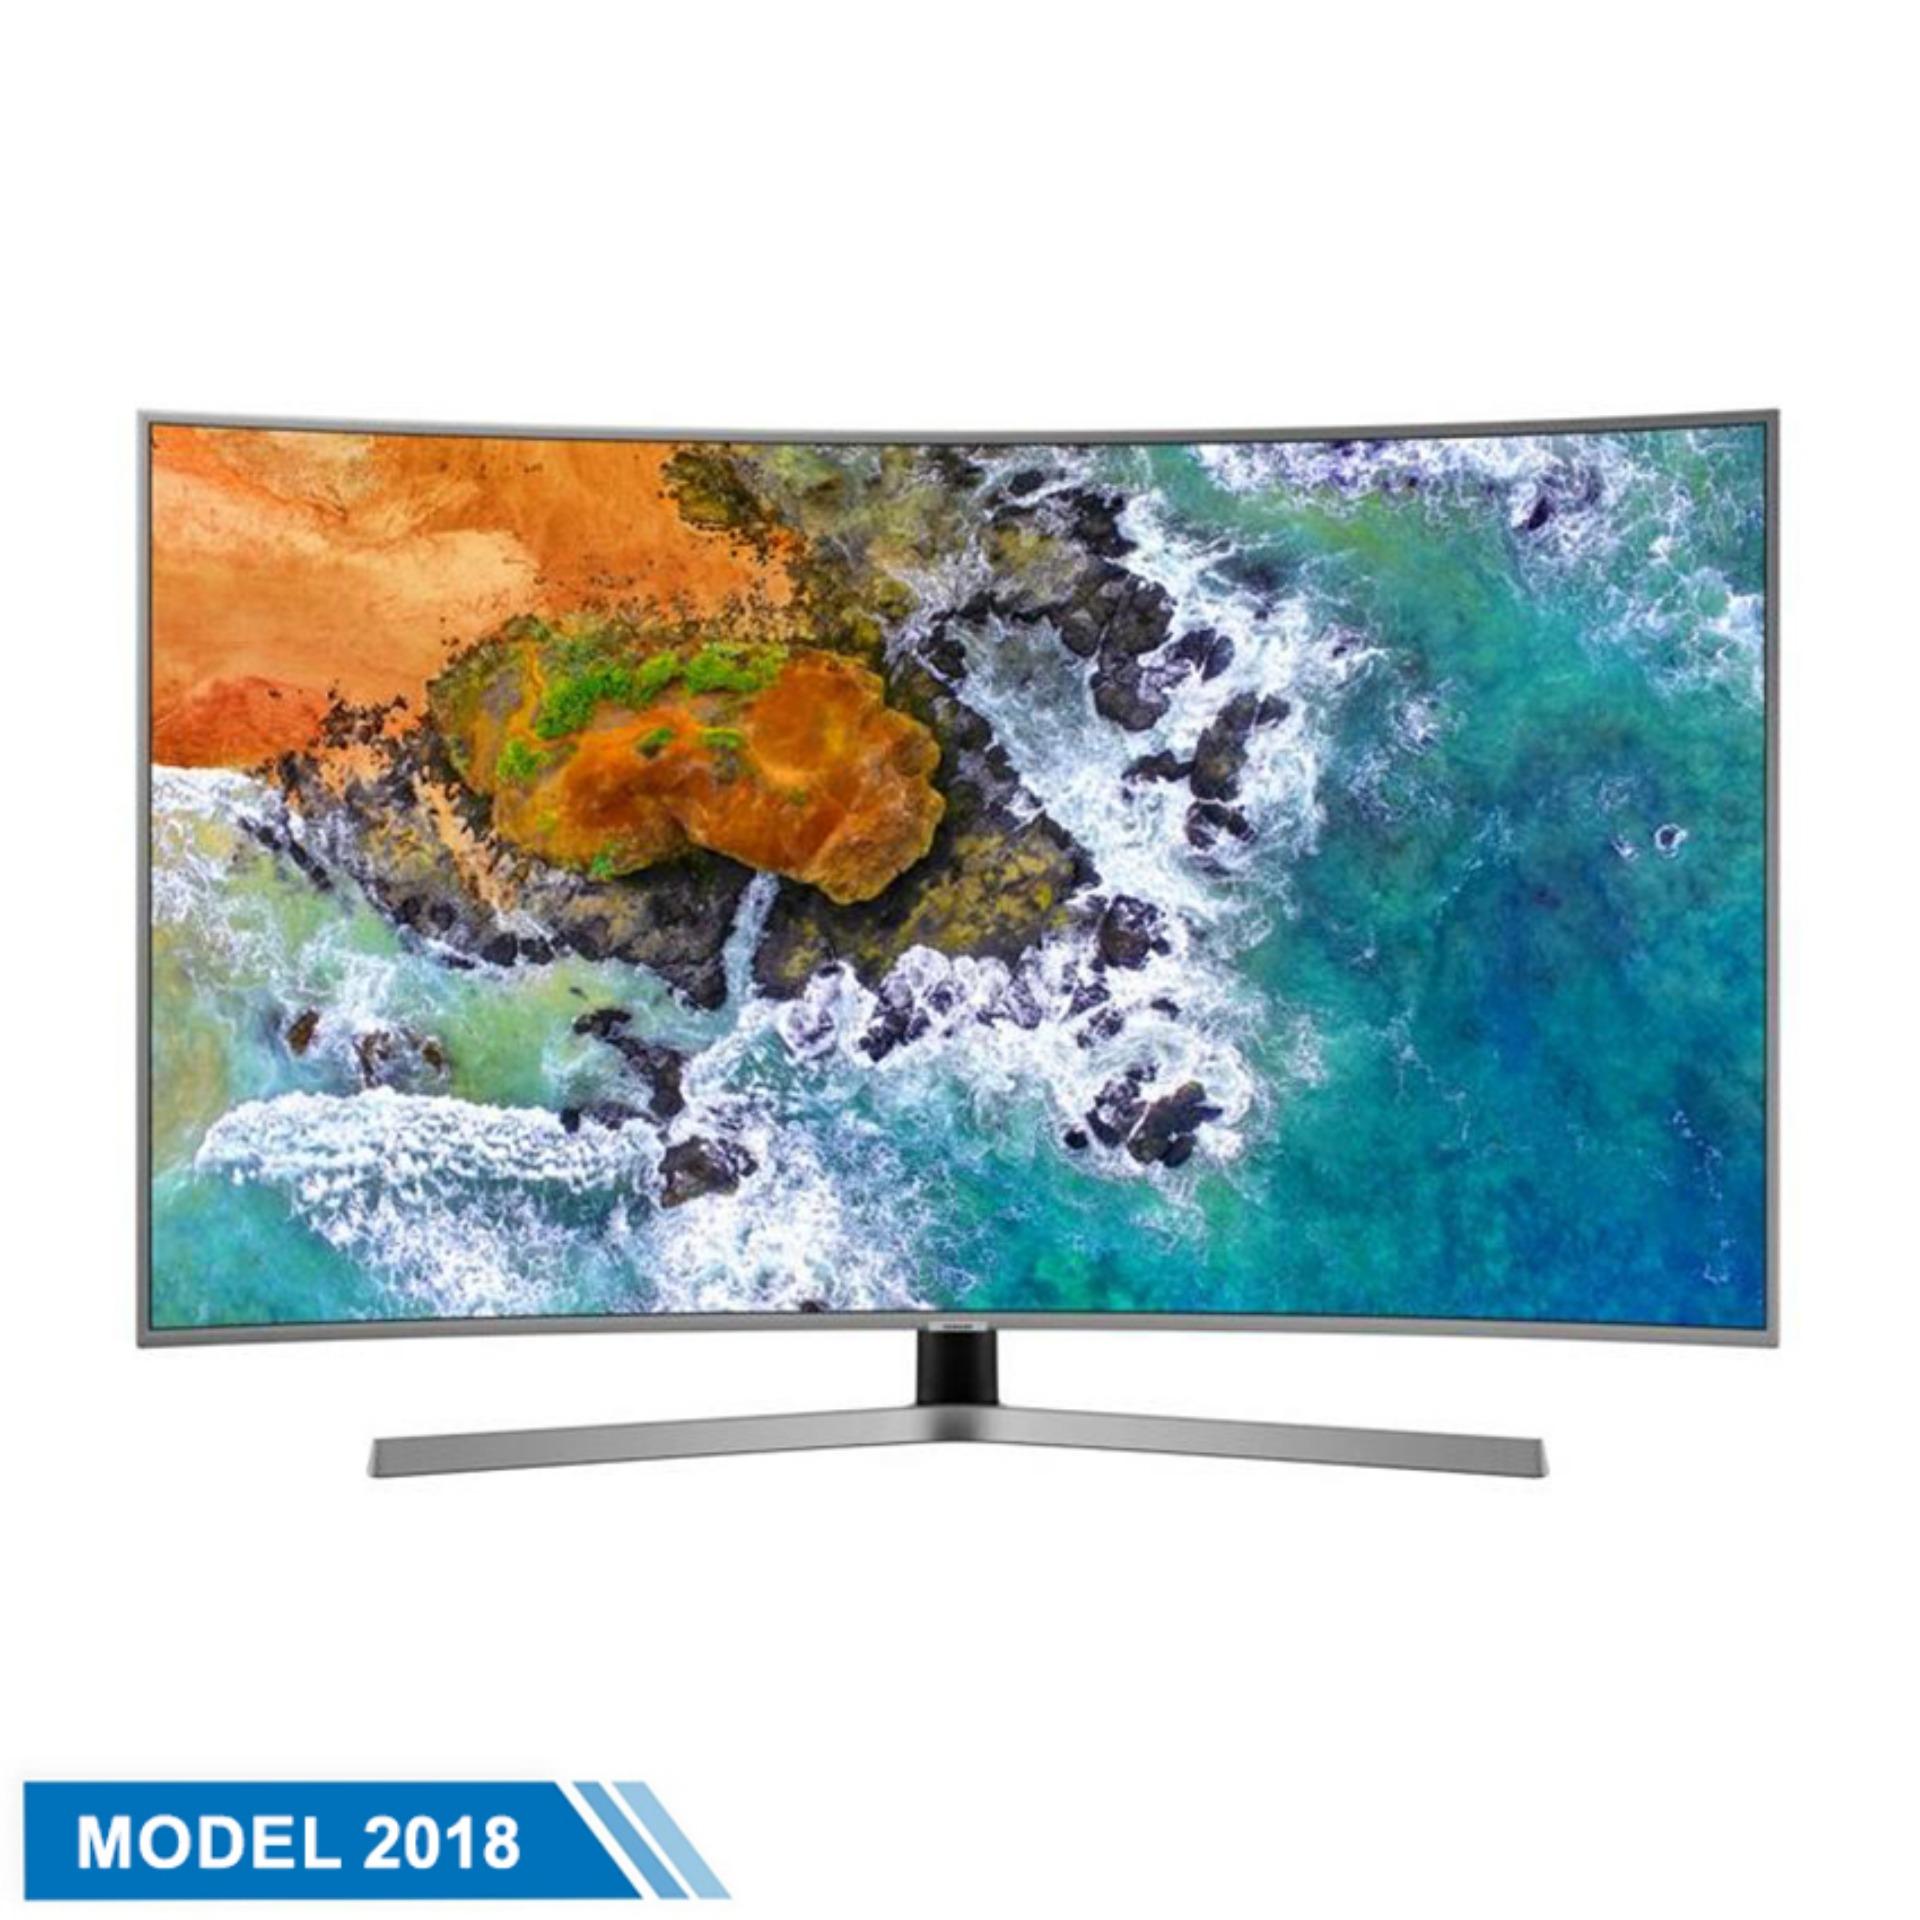 Smart TV Samsung LED màn hình cong 55inch 4K Ultra HD - Model UA55NU7500KXXV (Đen) - Hãng phân phối chính...